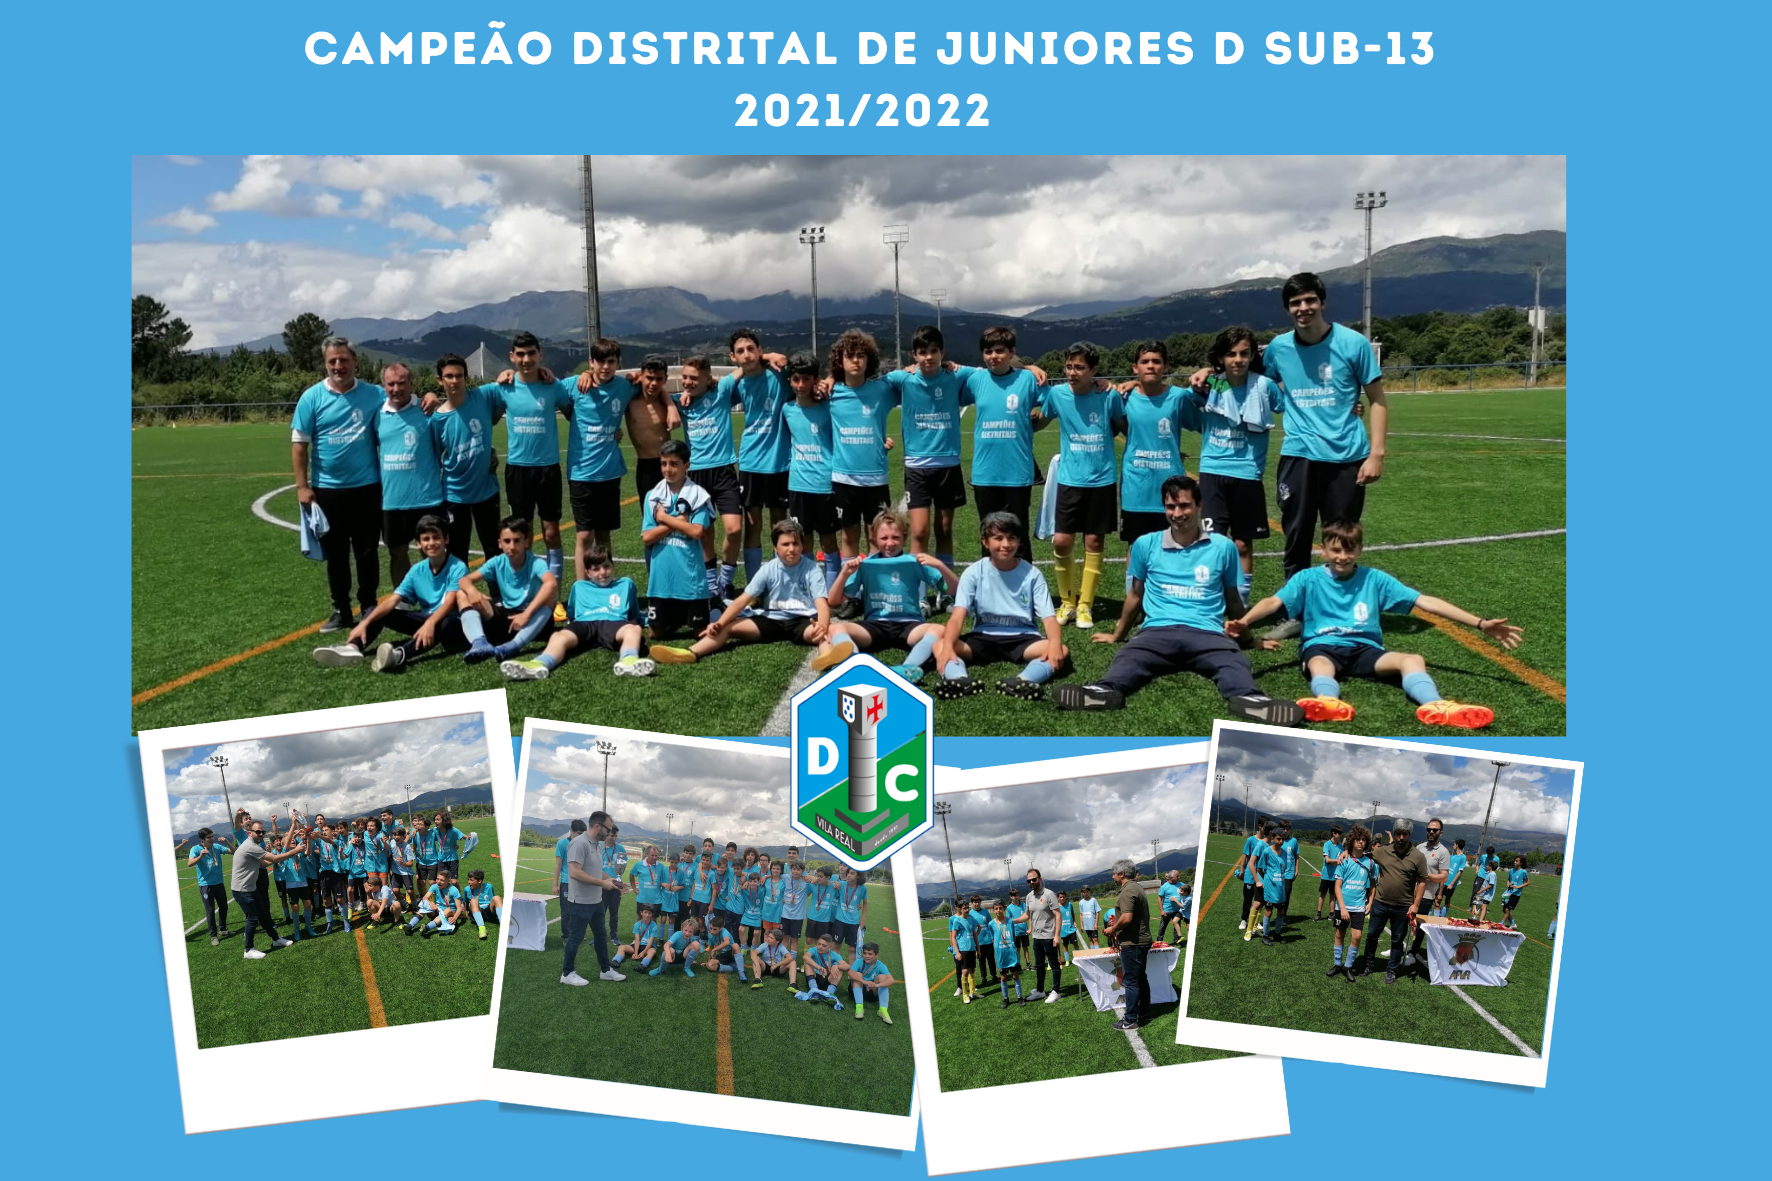 ADC Escola Diogo Cão | Campeão Distrital de Juniores D Sub-13 2021/2022